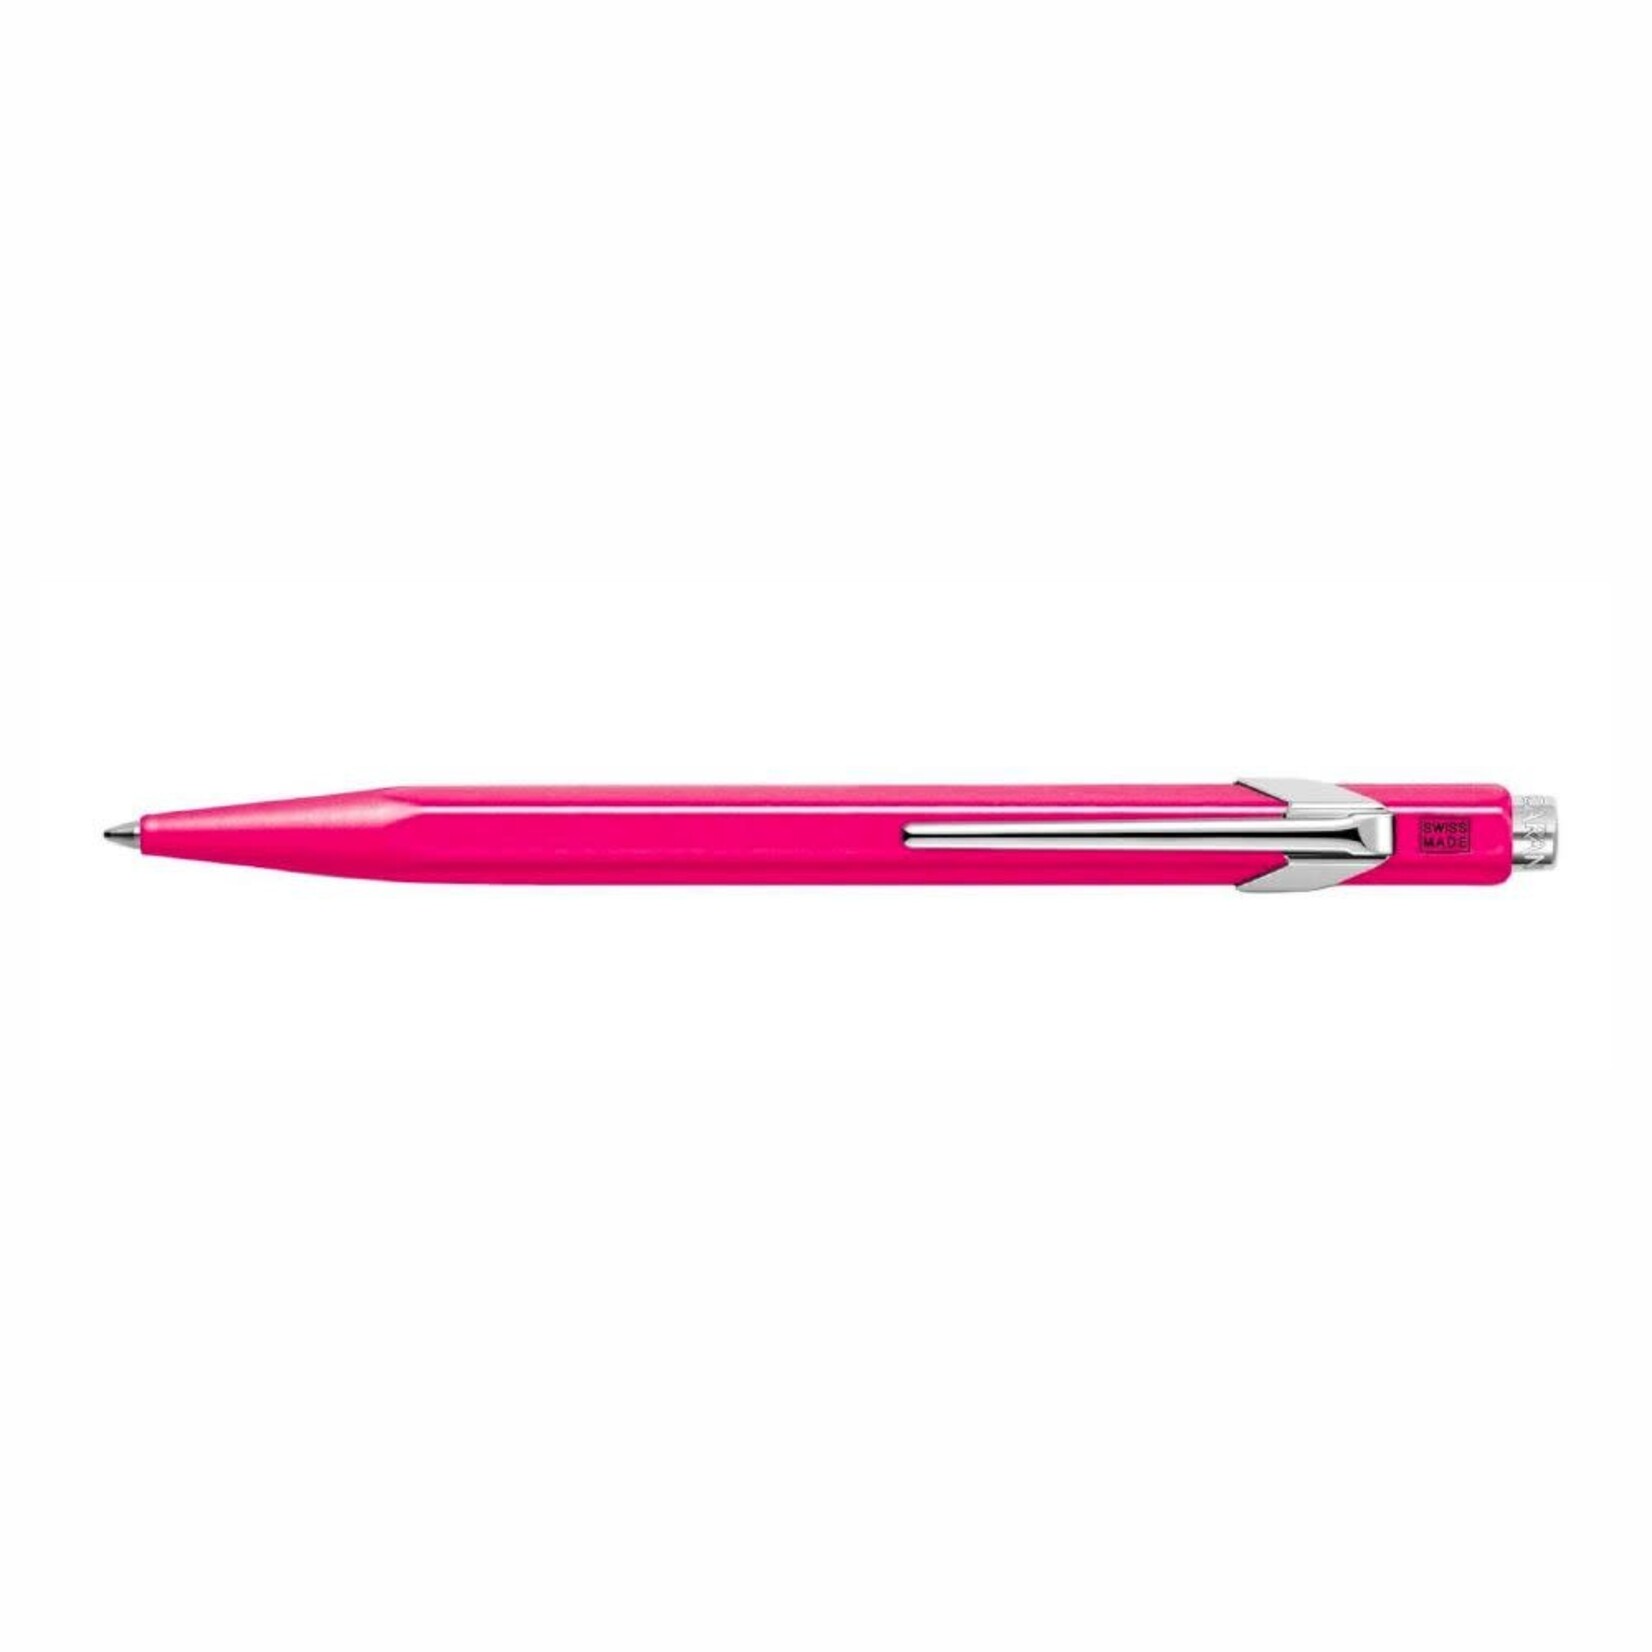 Caran d'Ache Caran D'Ache 849 Series Ballpoint Pen, Fluorescent Pink